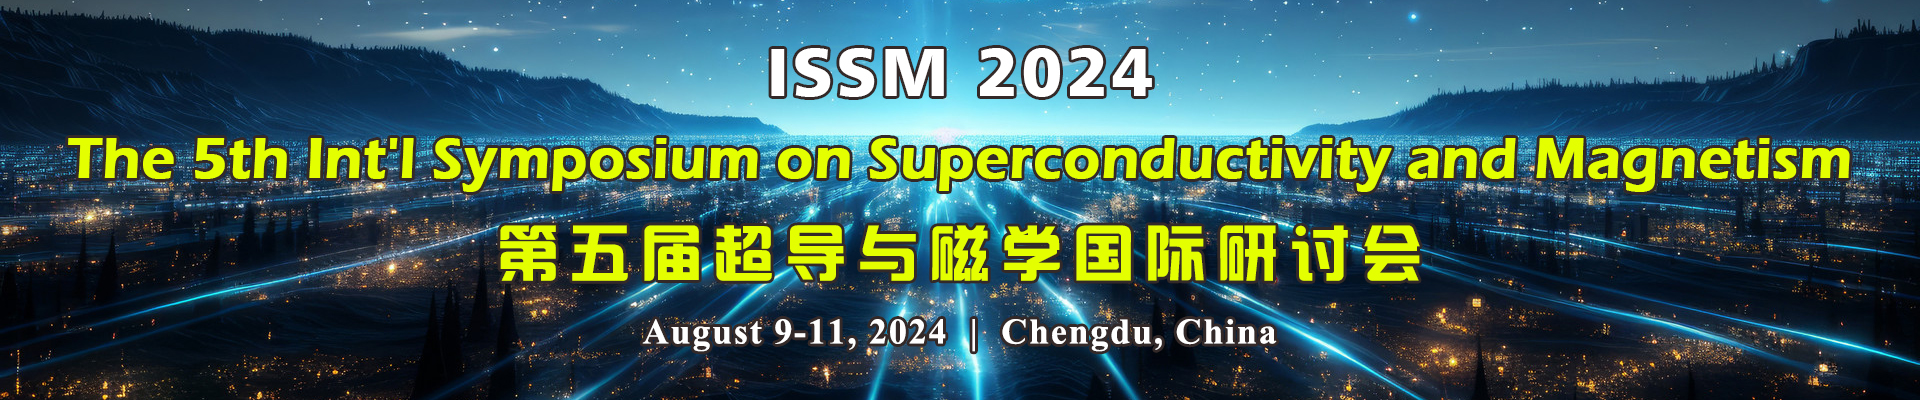 第五届超导与磁学国际研讨会ISSM 2024